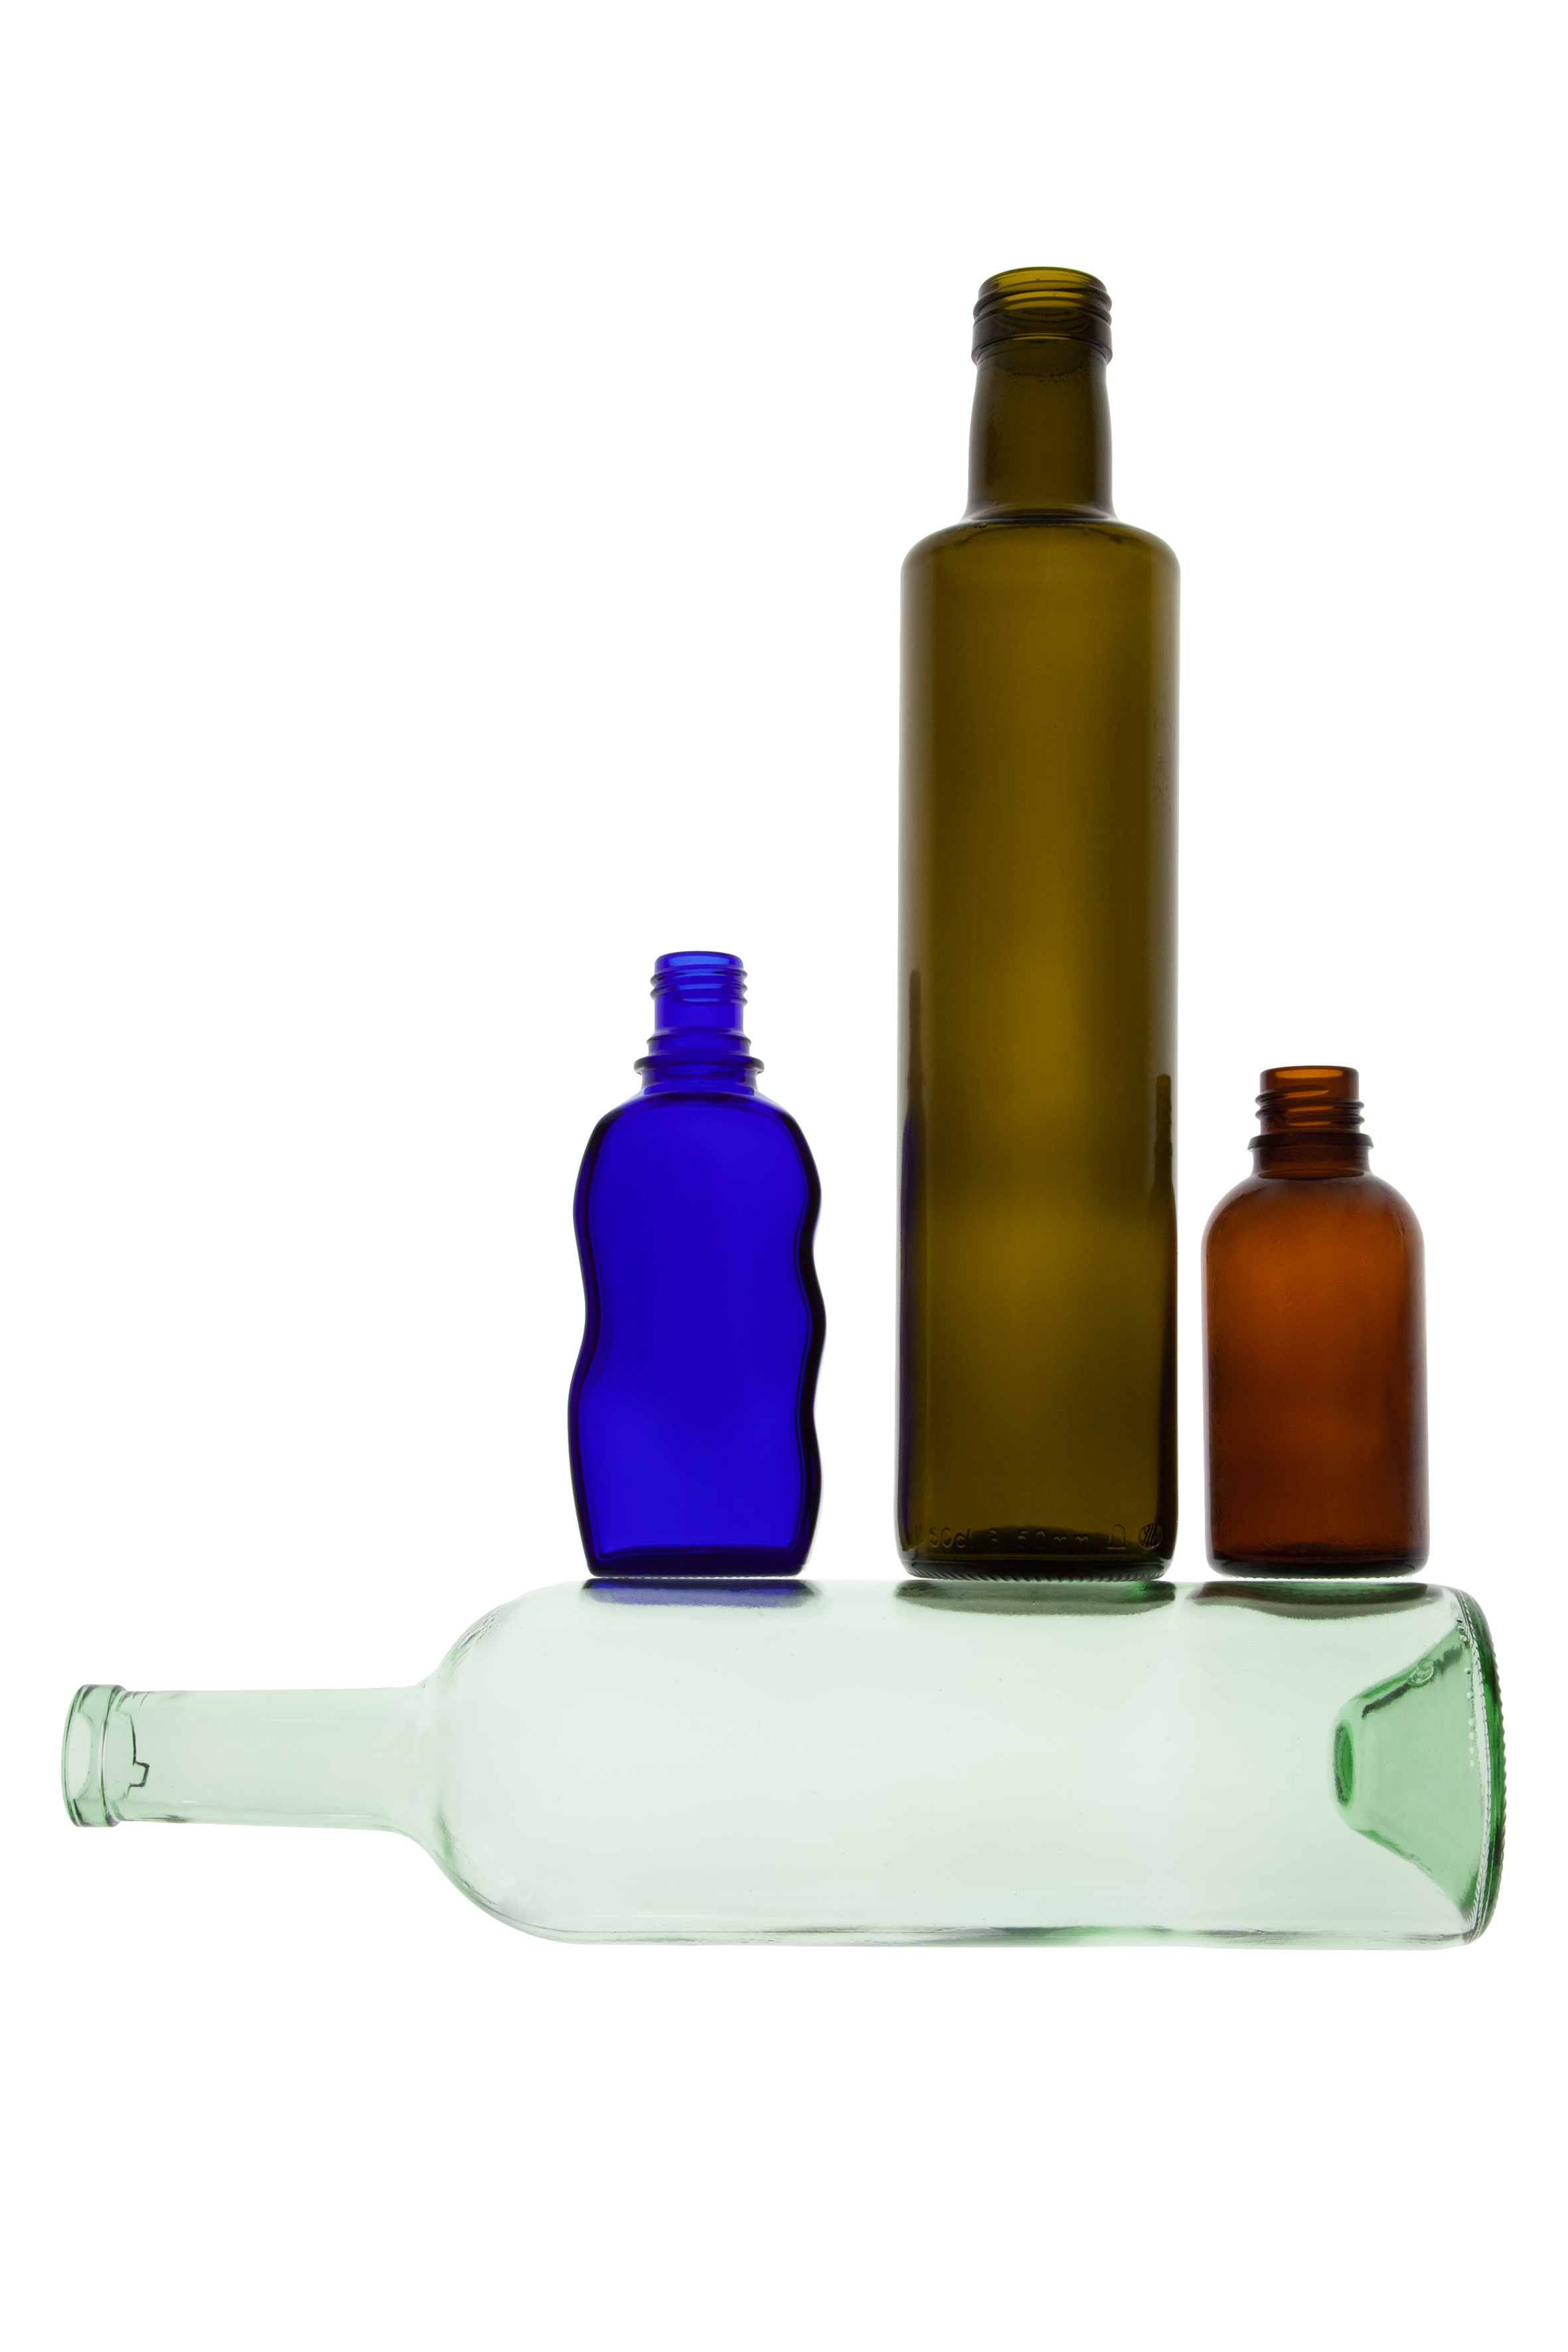 Mehrere gefärbte Glasflaschen stehen auf einer querliegenden hellgrünen Glasflasche.